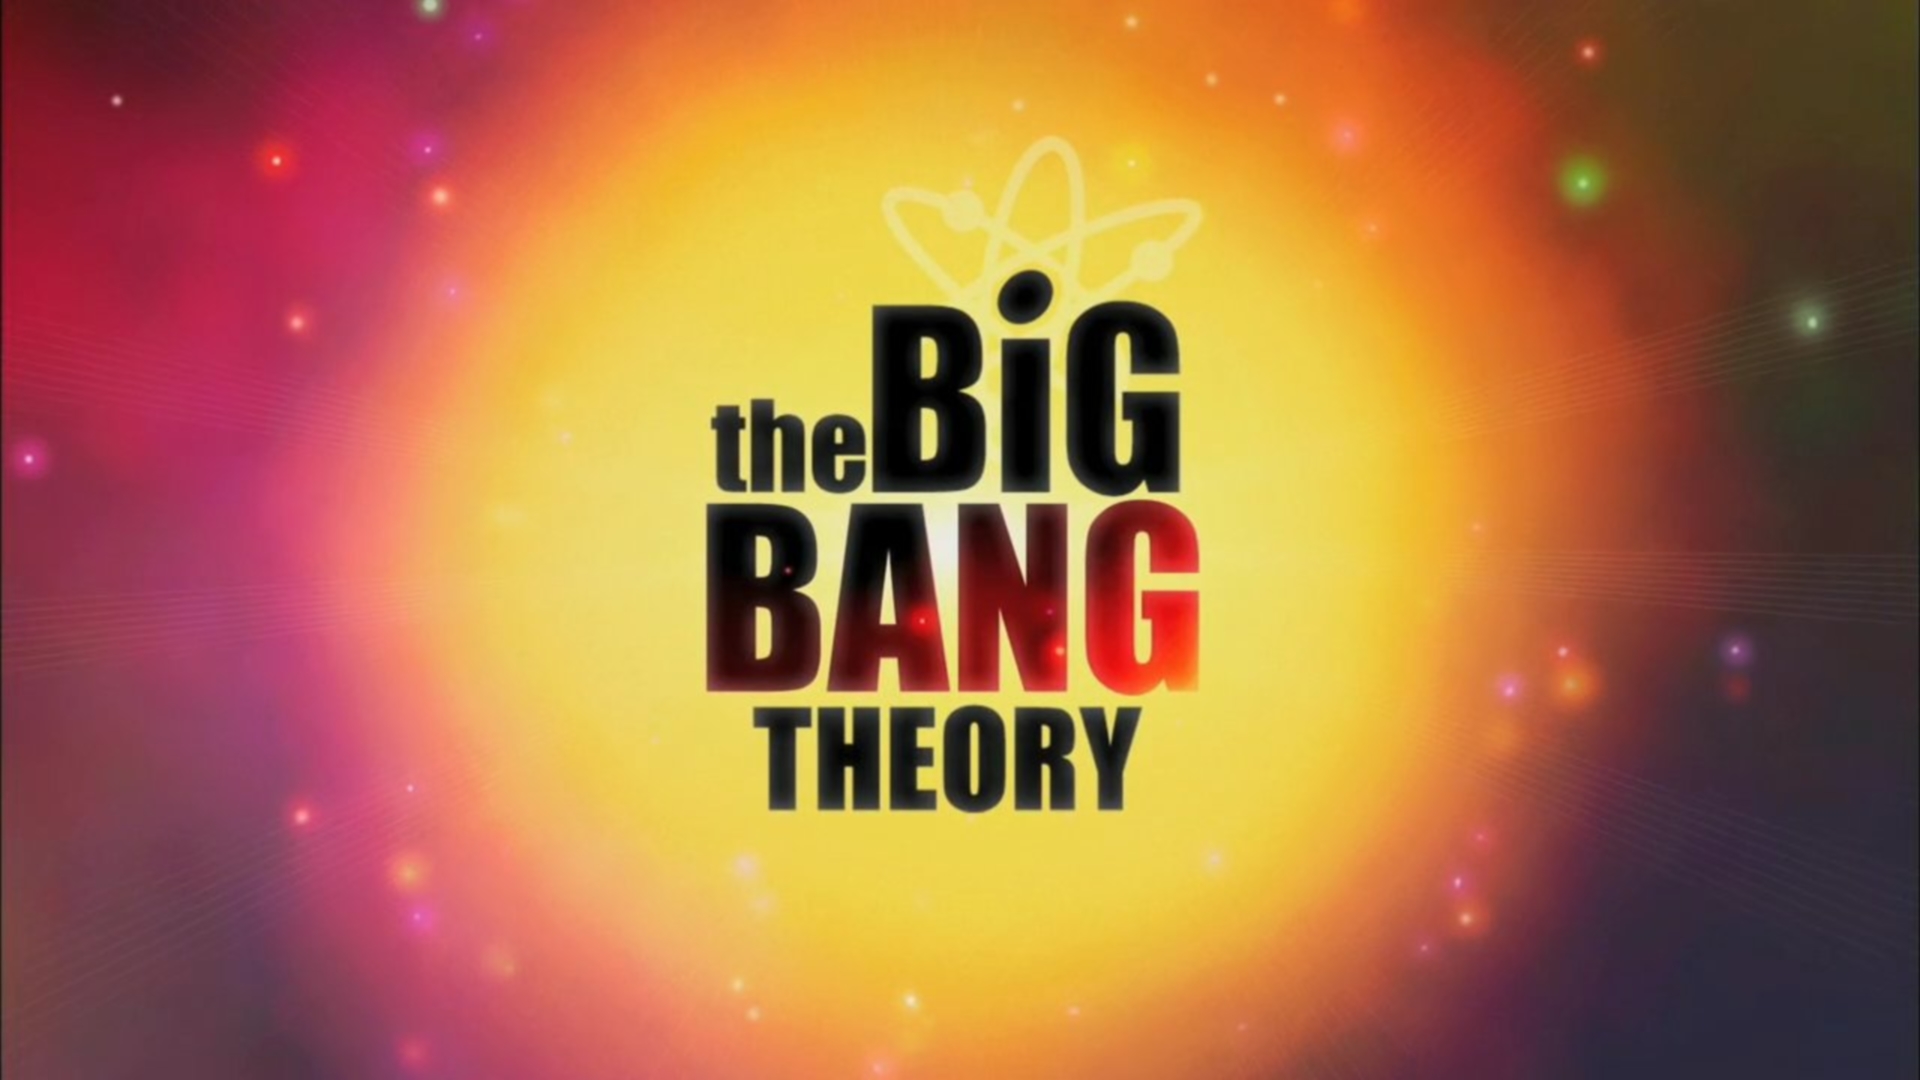 big bang theory wallpaper penny